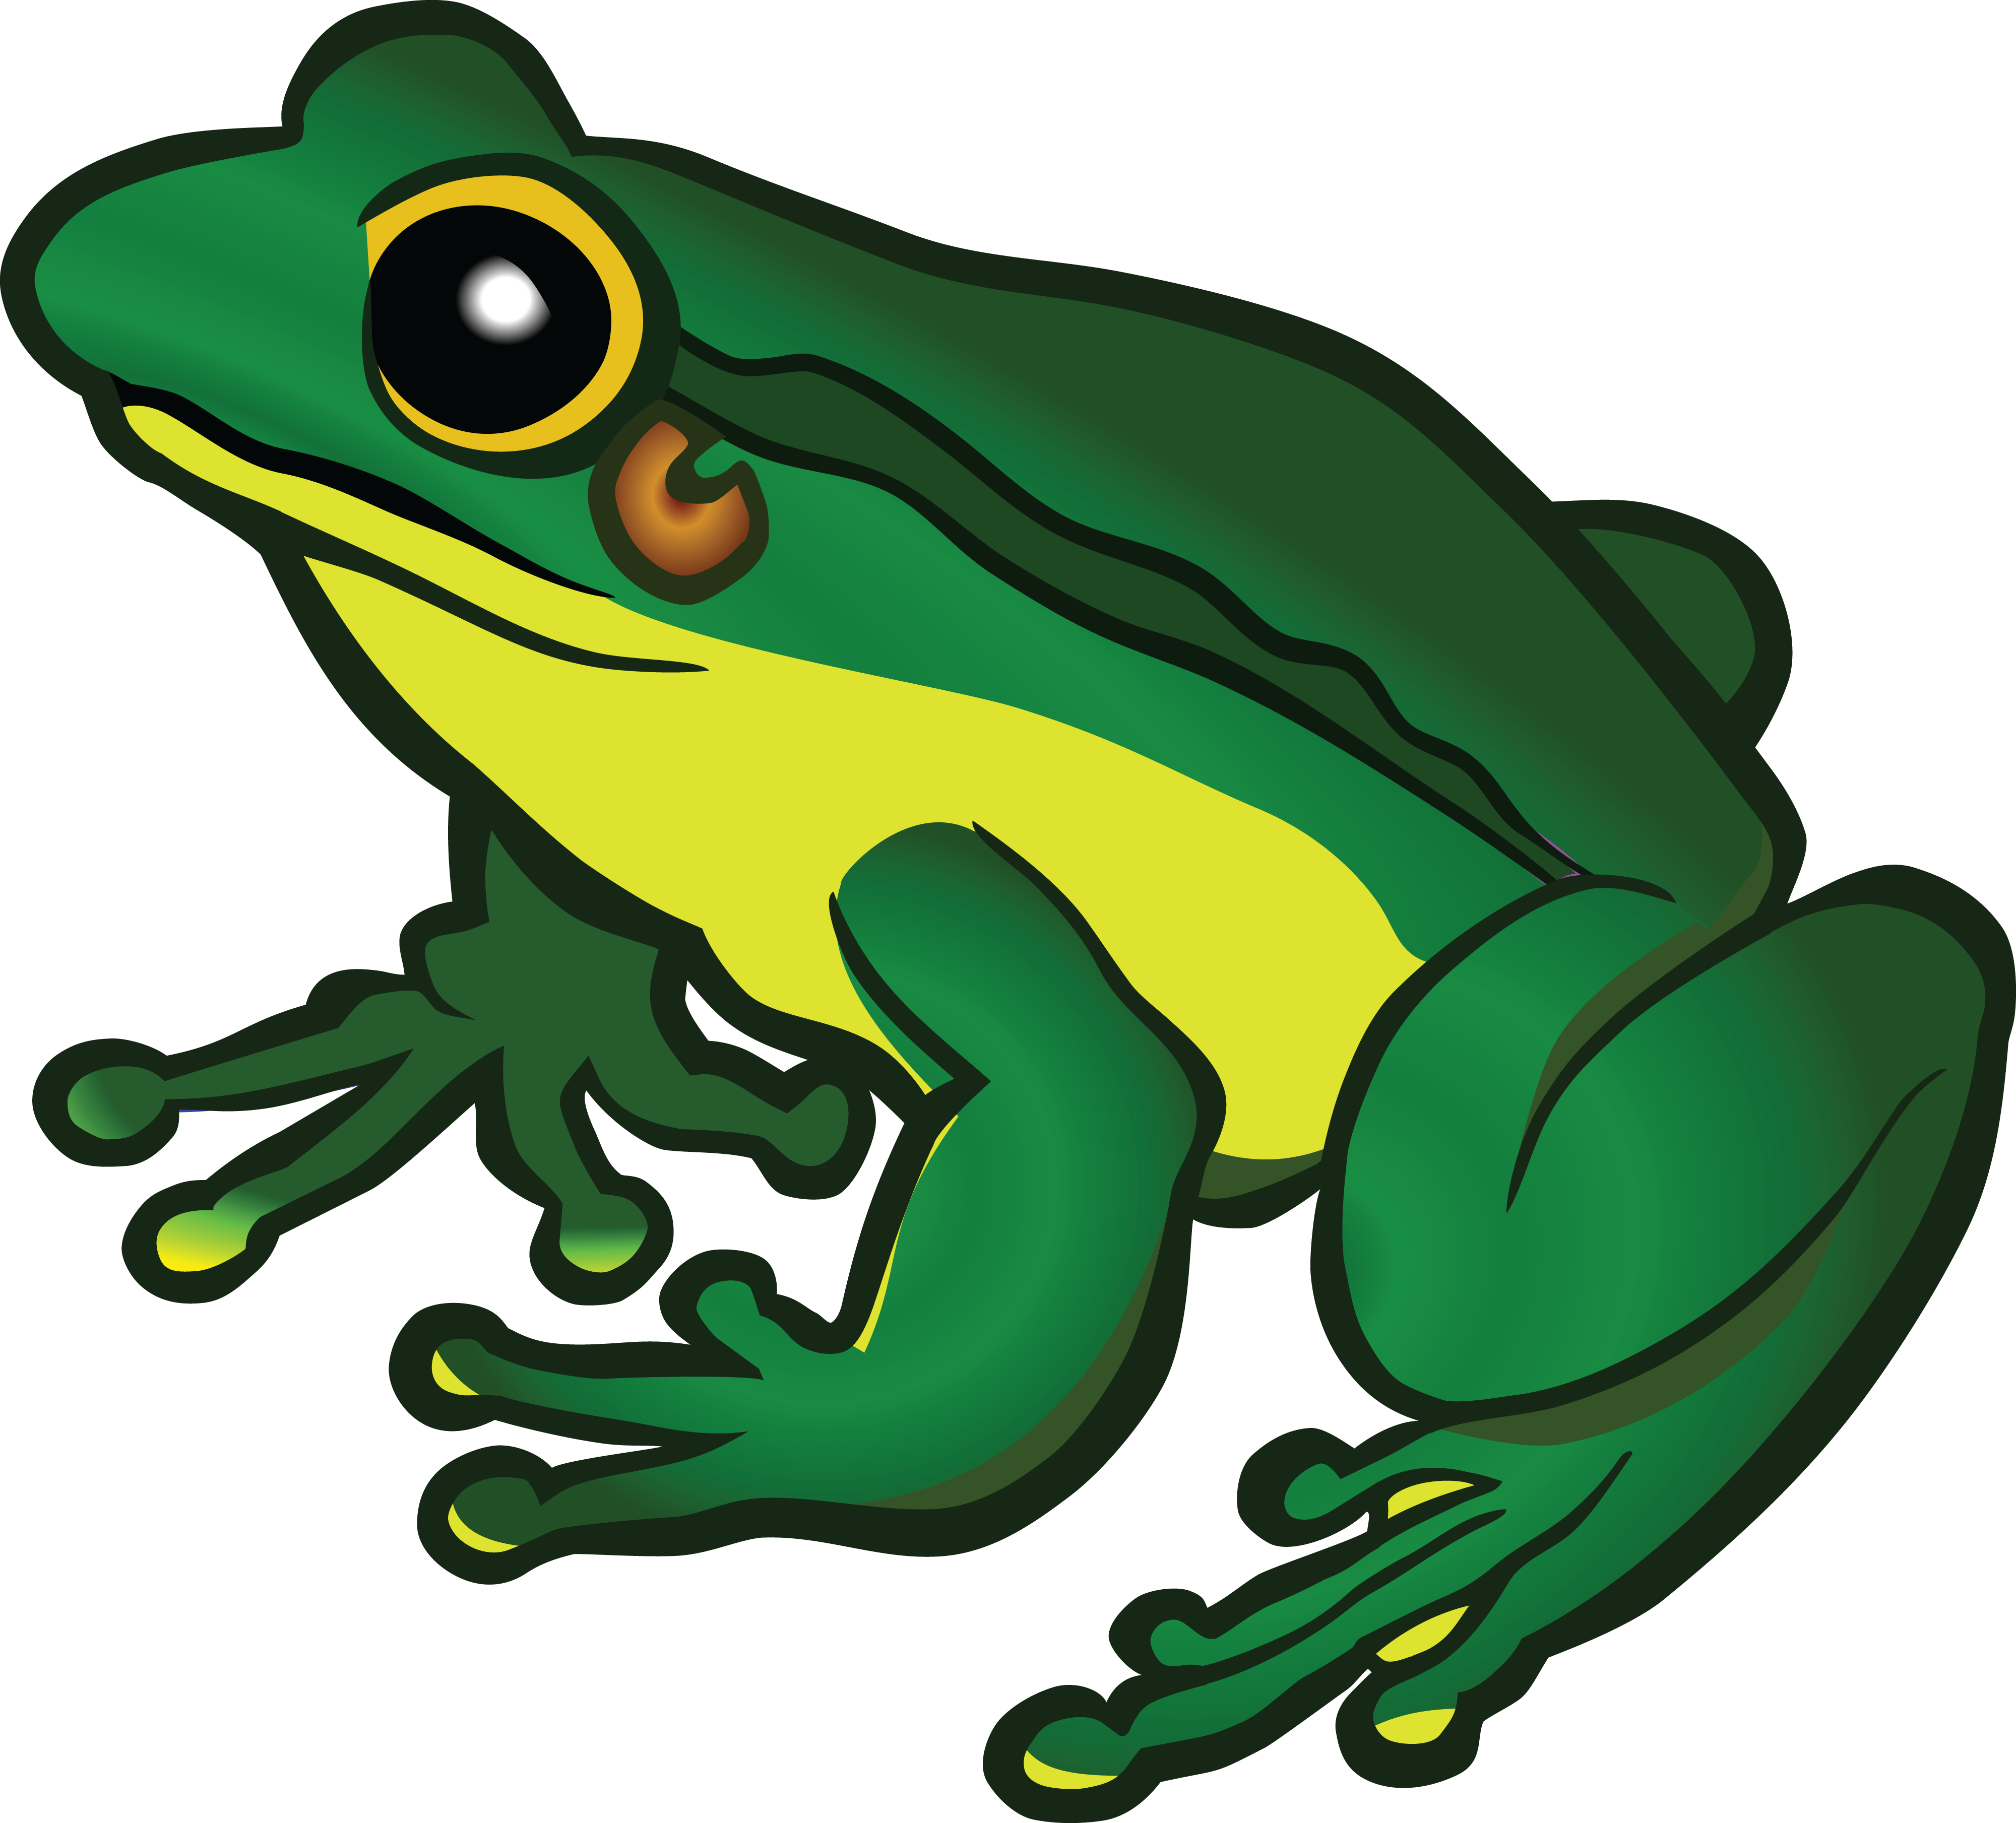 Frog PNG Image Background